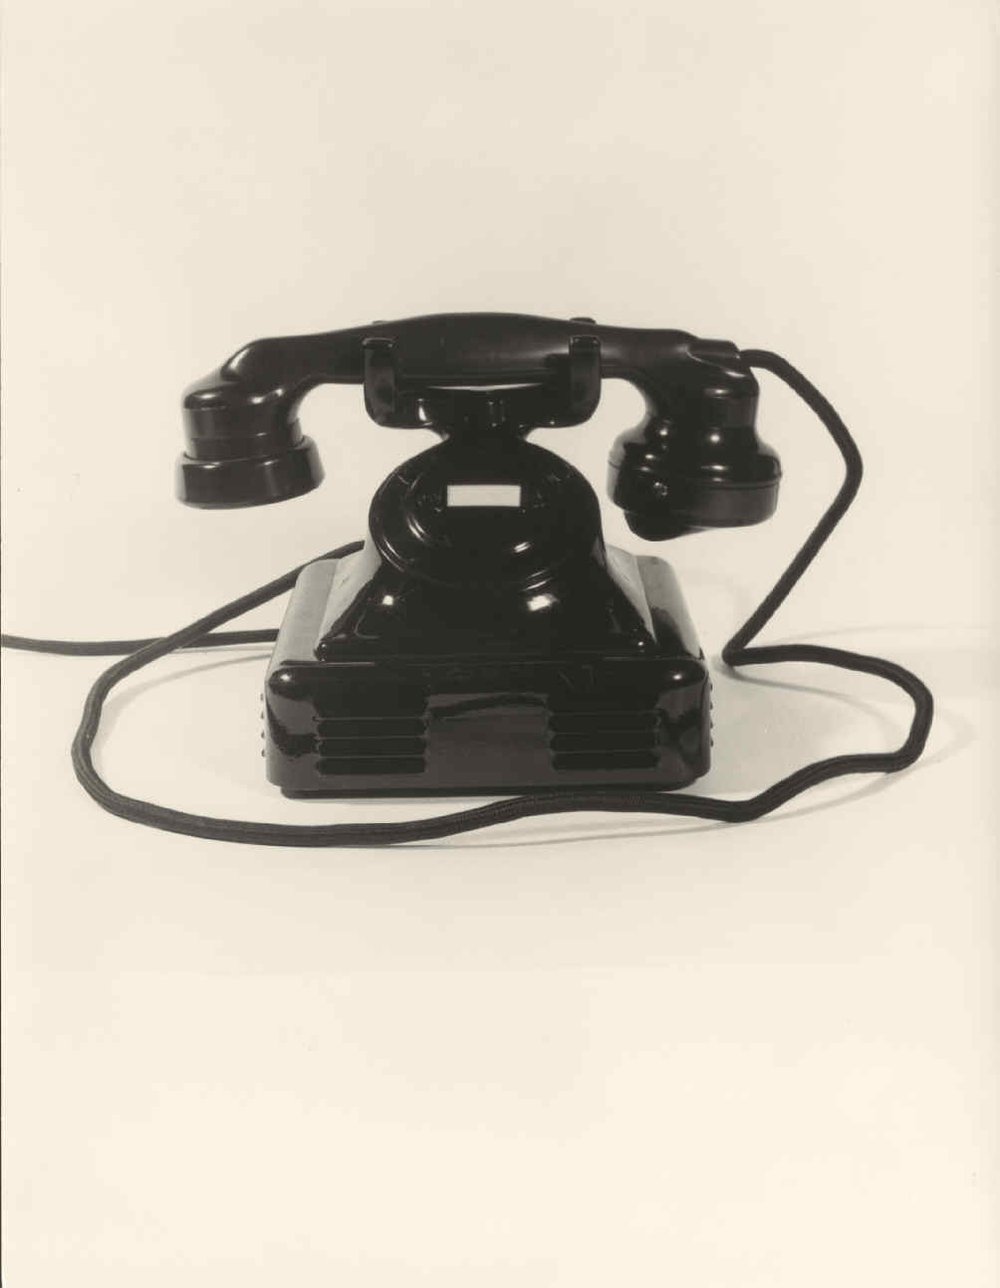 Black manual desktop telephone.